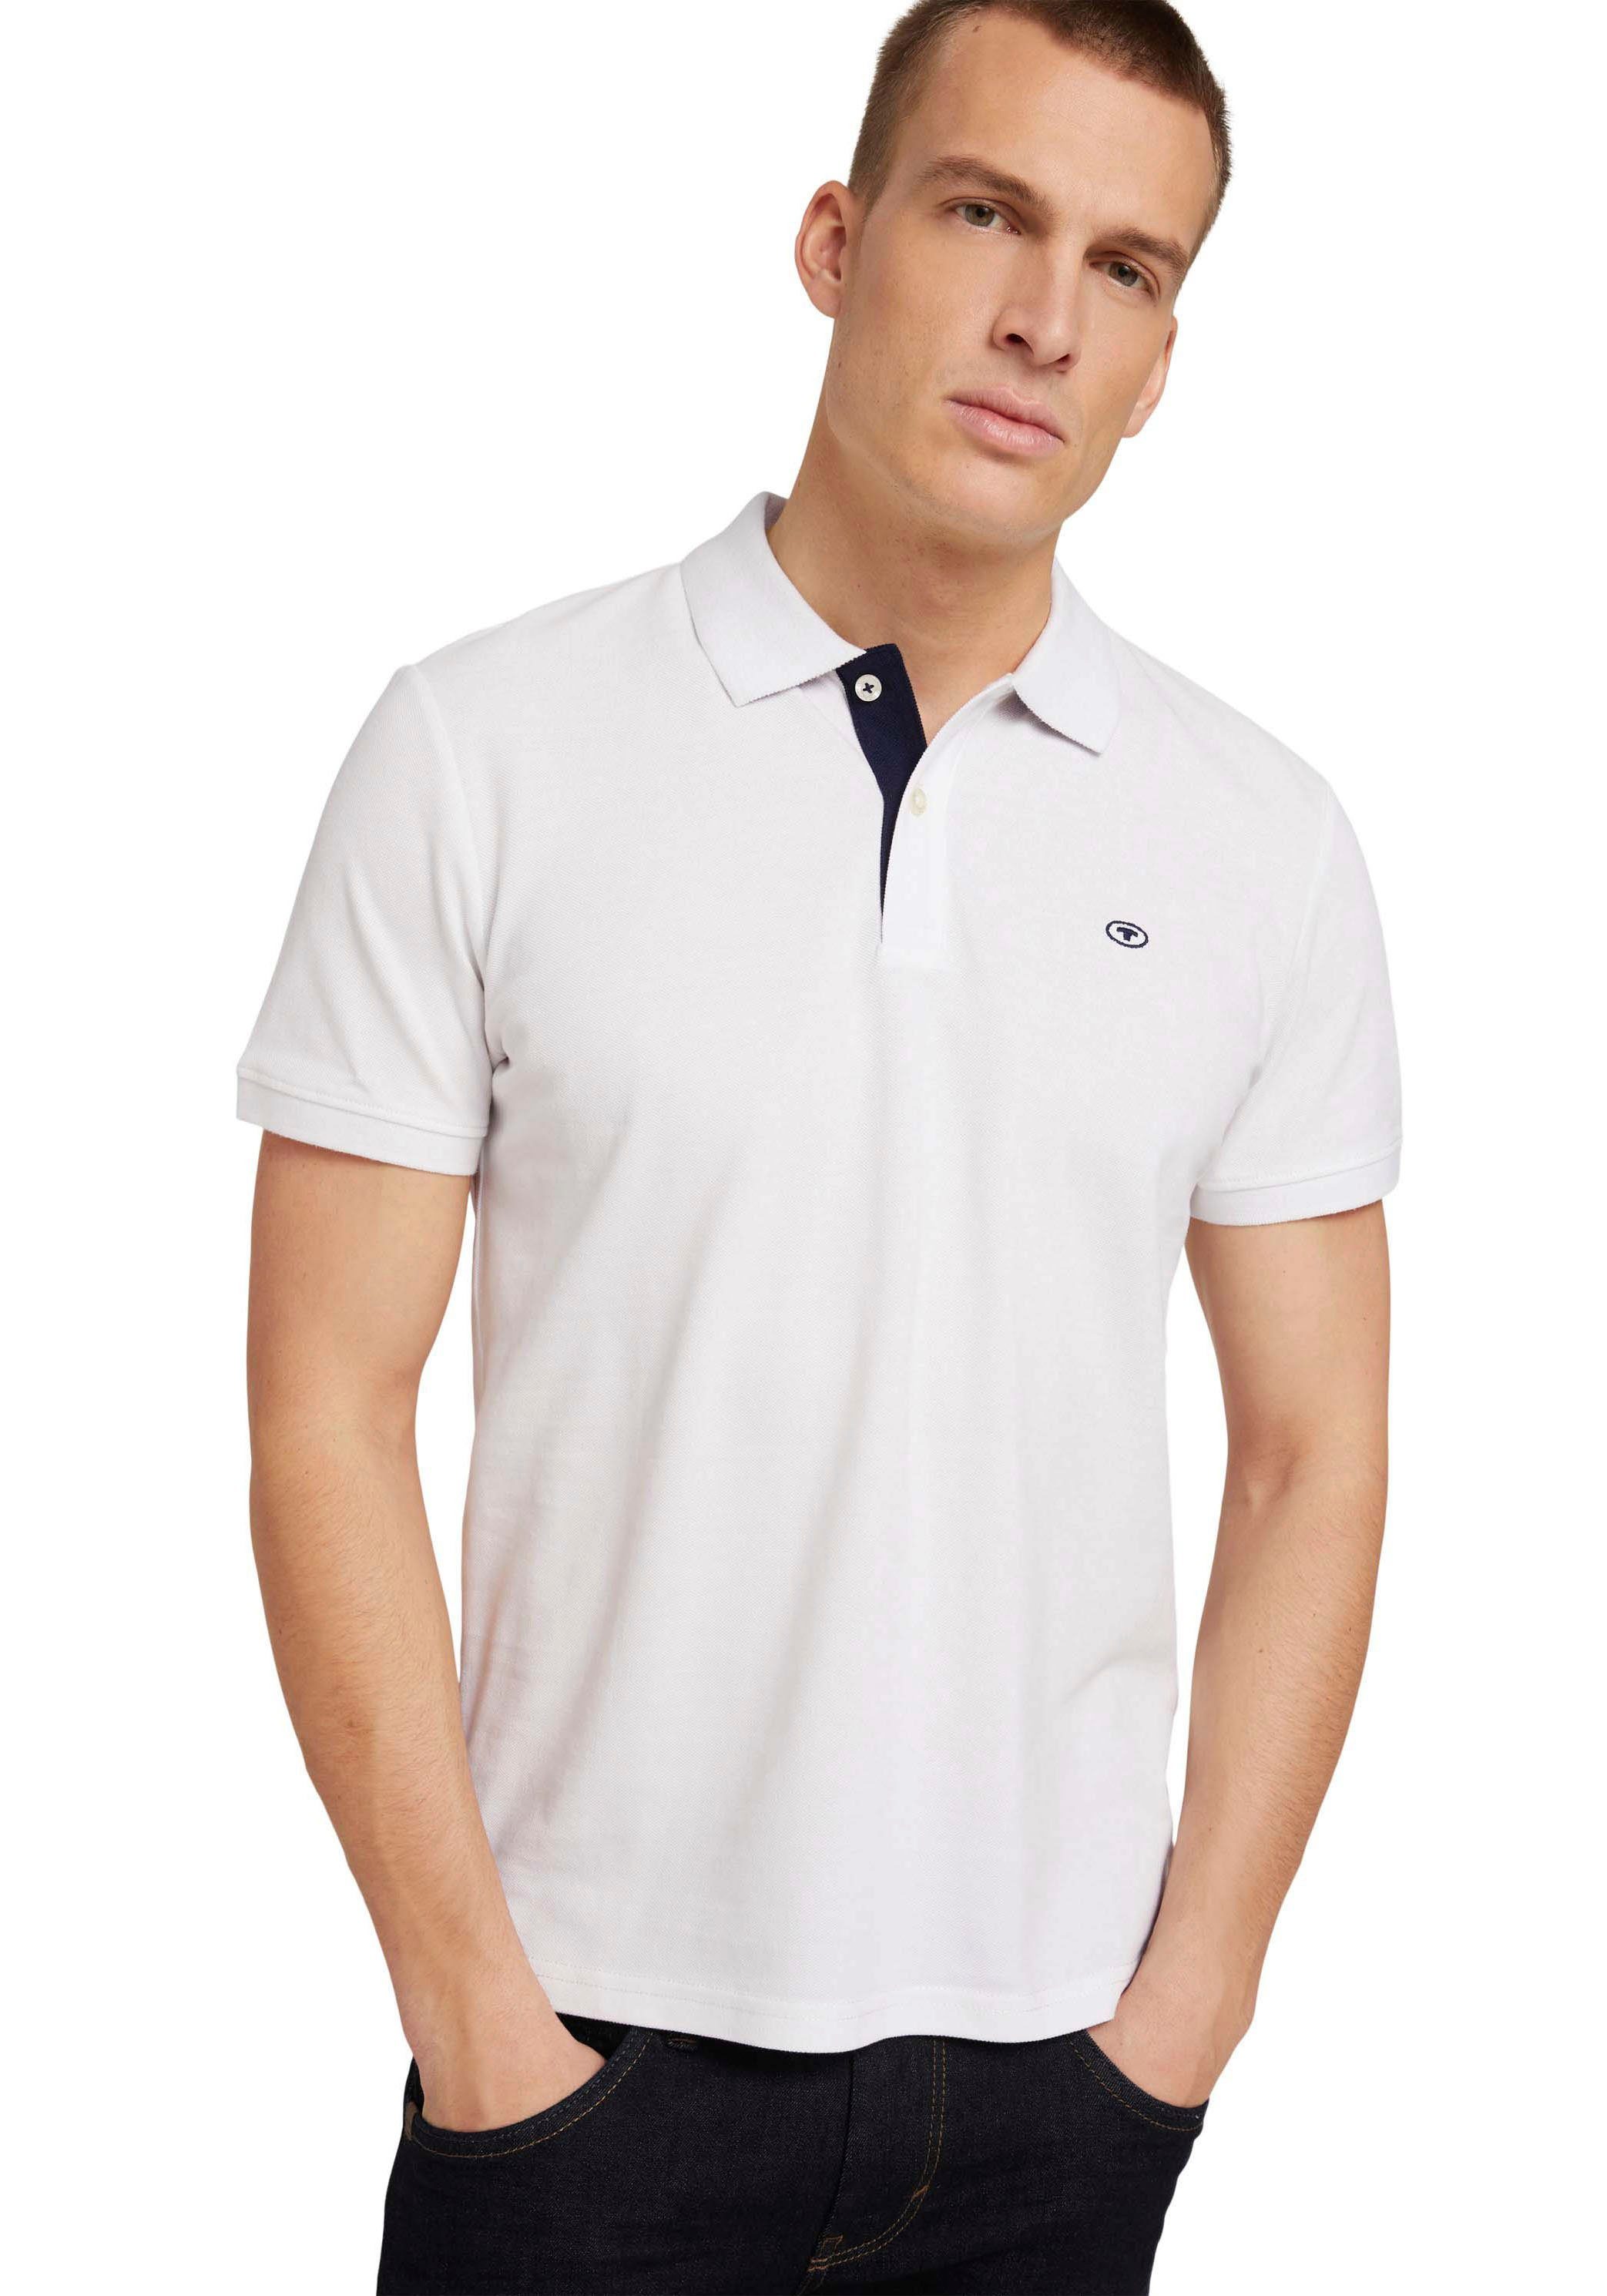 TOM TAILOR Poloshirt mit kontrastfarbener Knopfleiste und kleinem Logo weiß